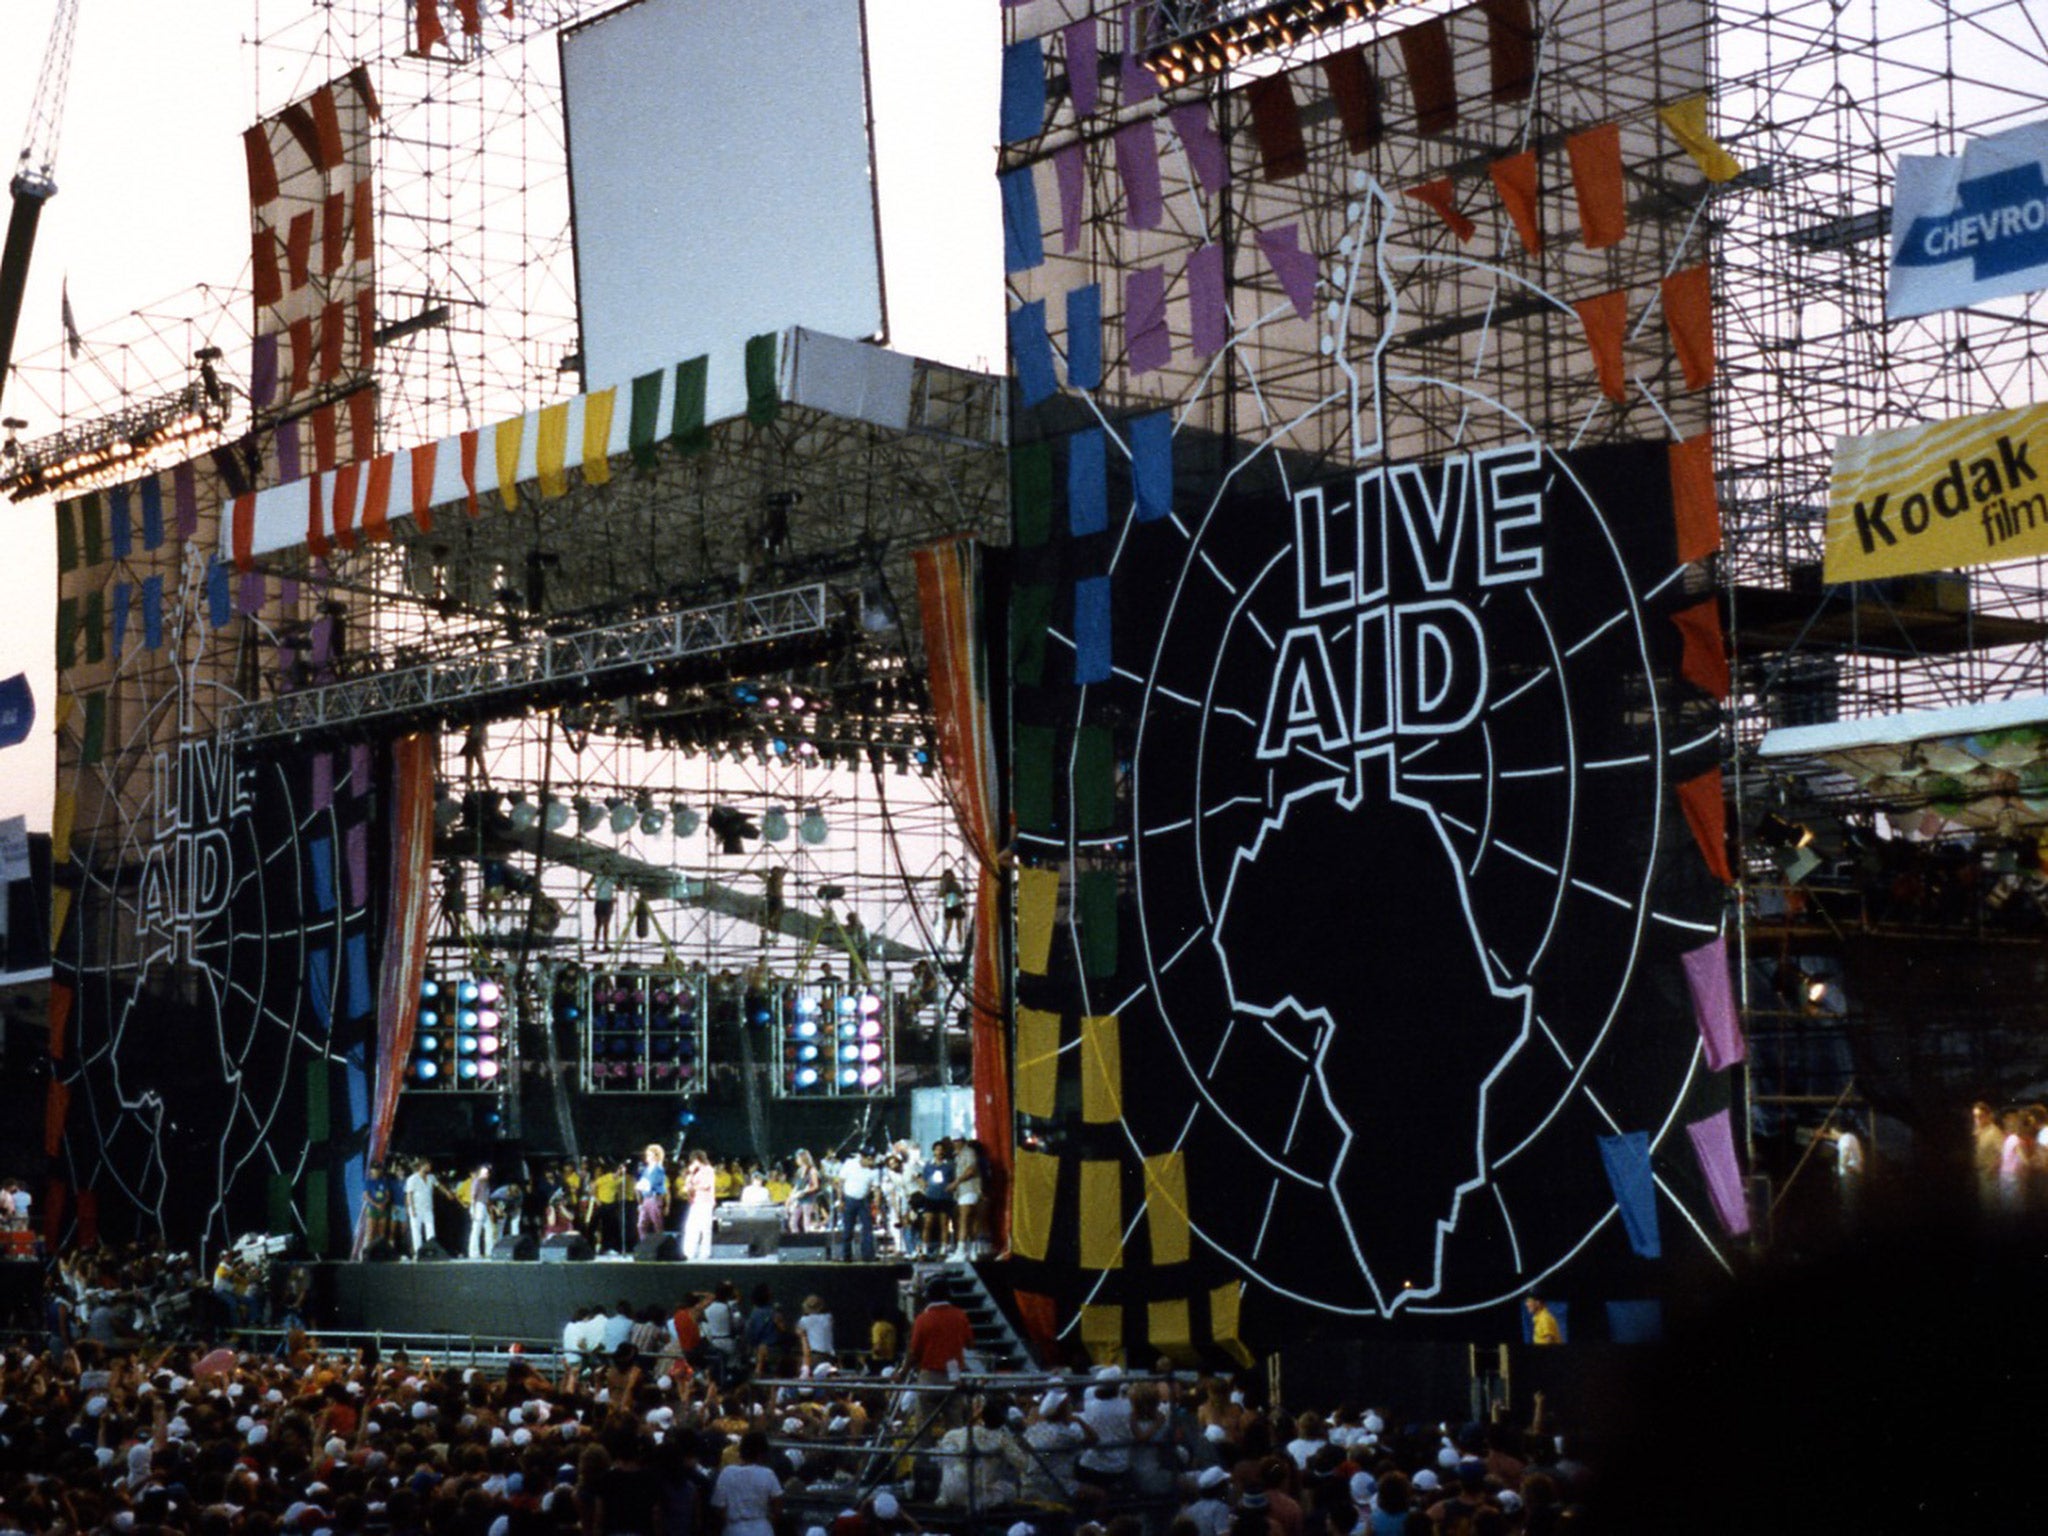 Live Aid at JFK Stadium in Philadelphia,1985